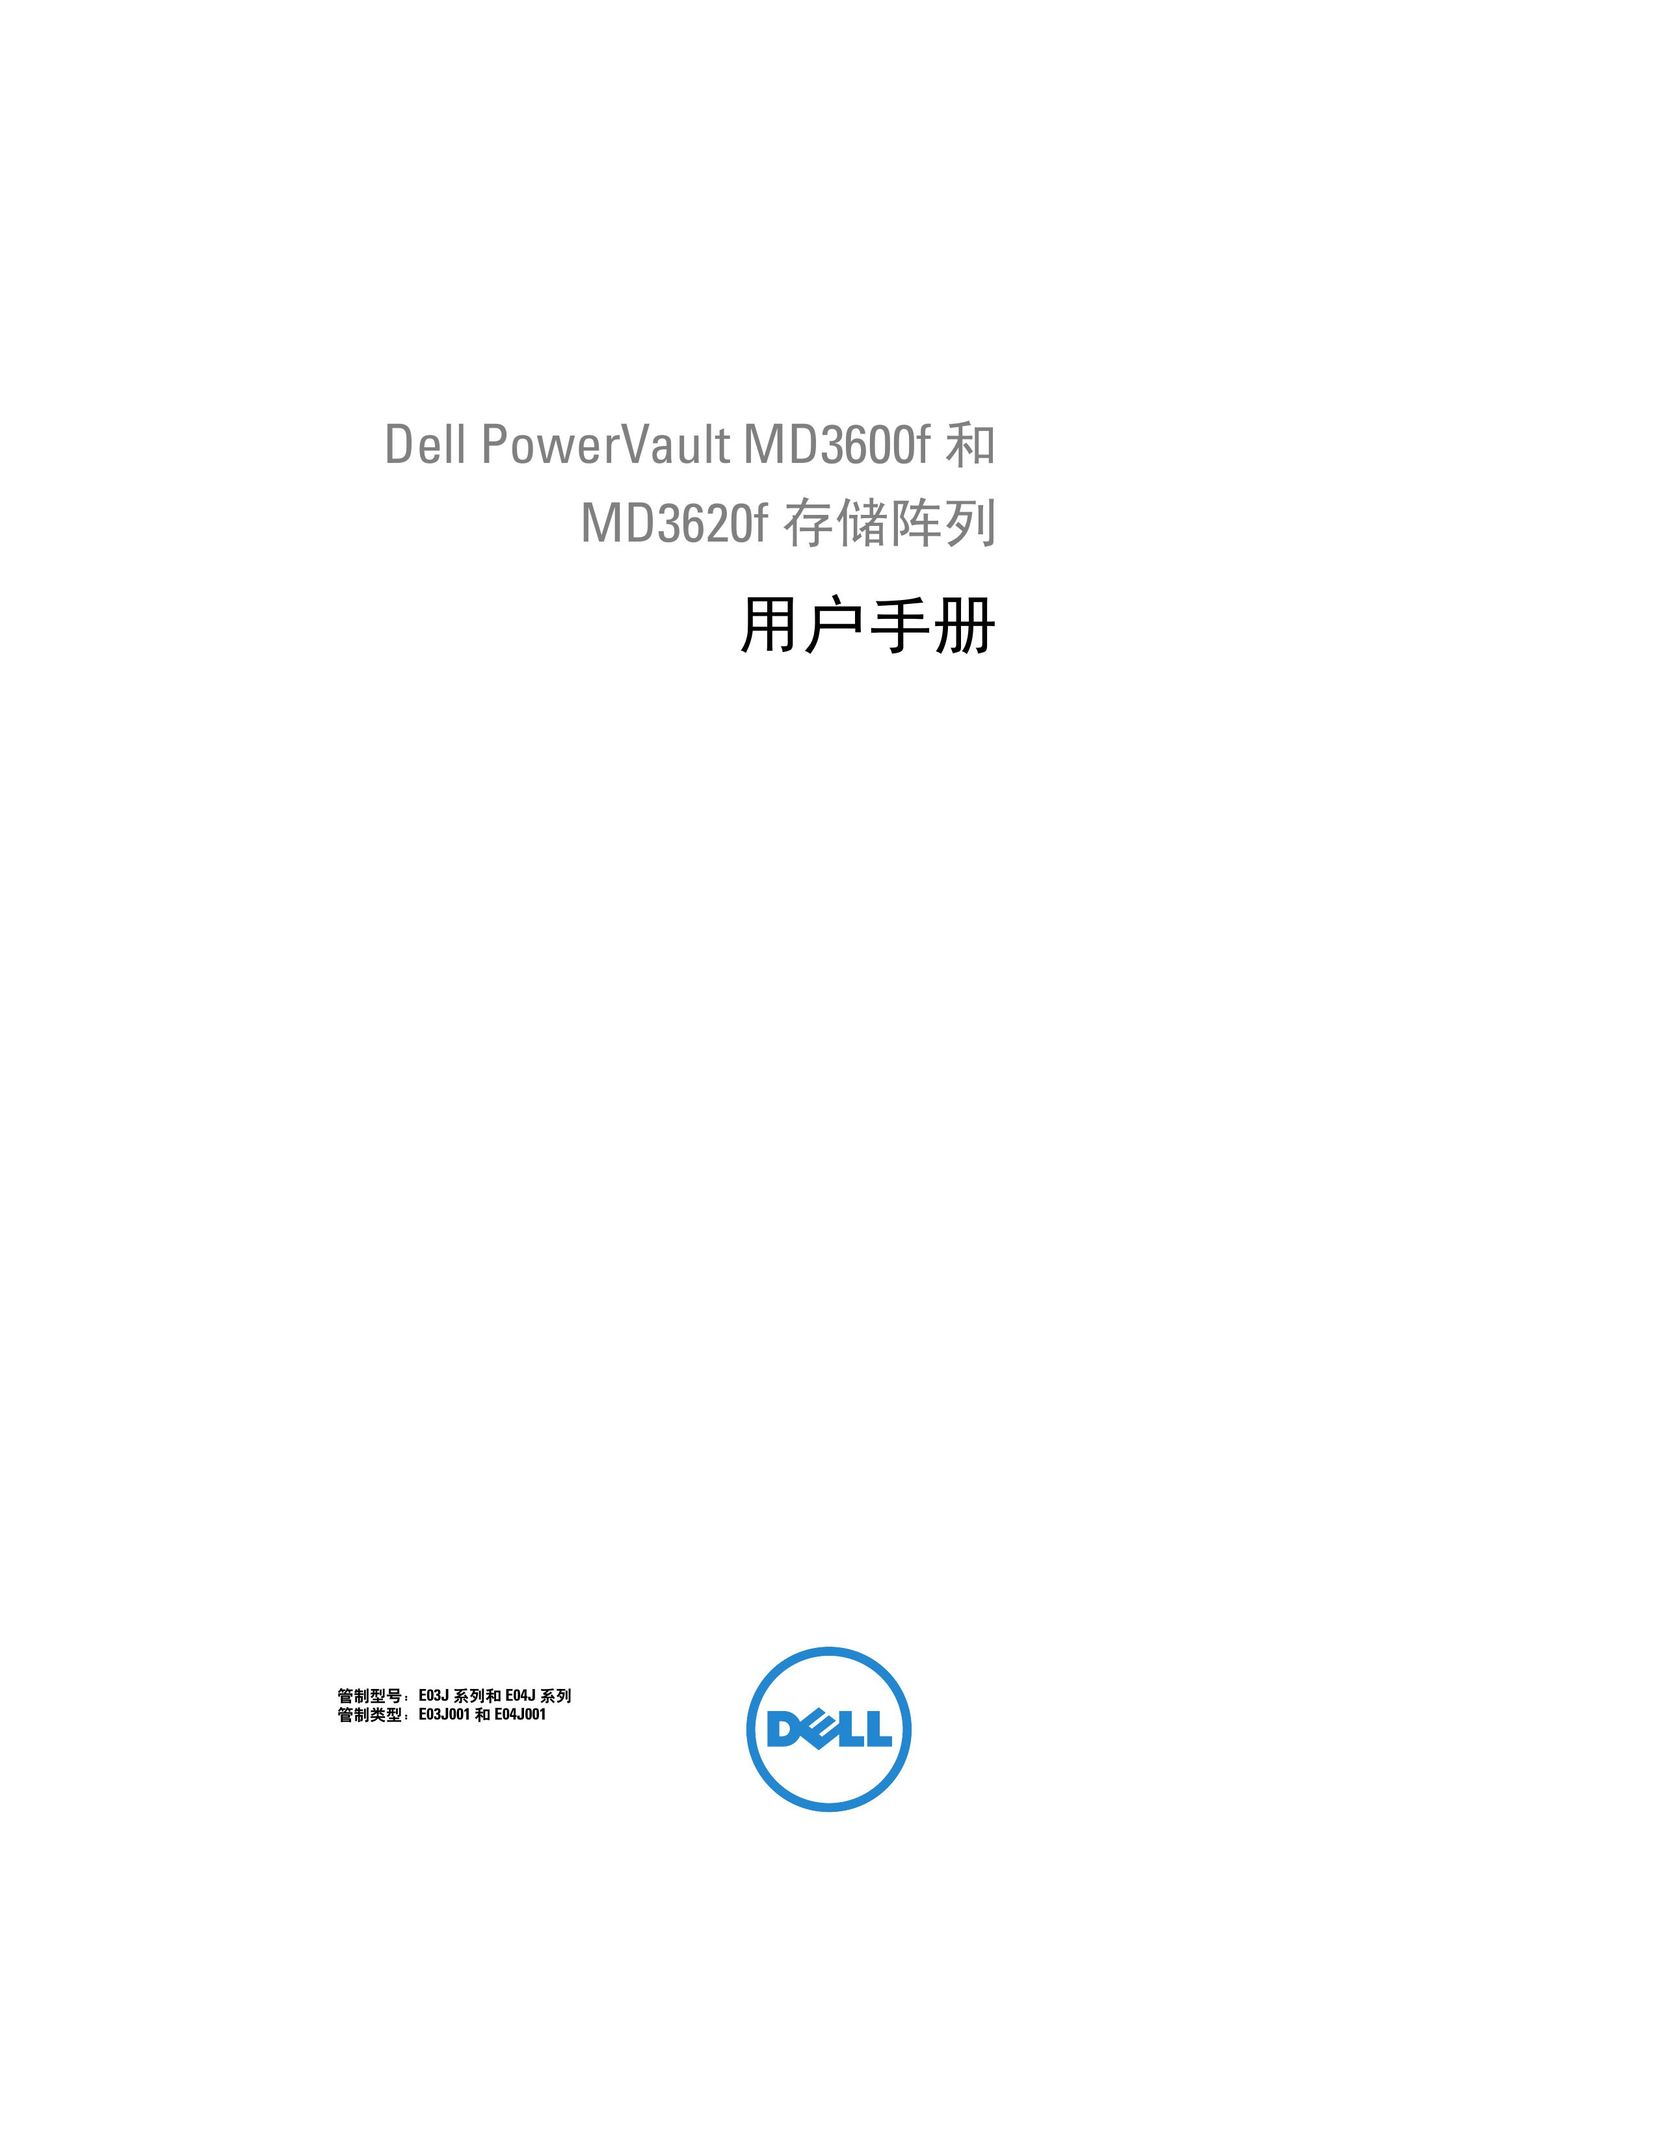 Dell MD3600f Computer Accessories User Manual